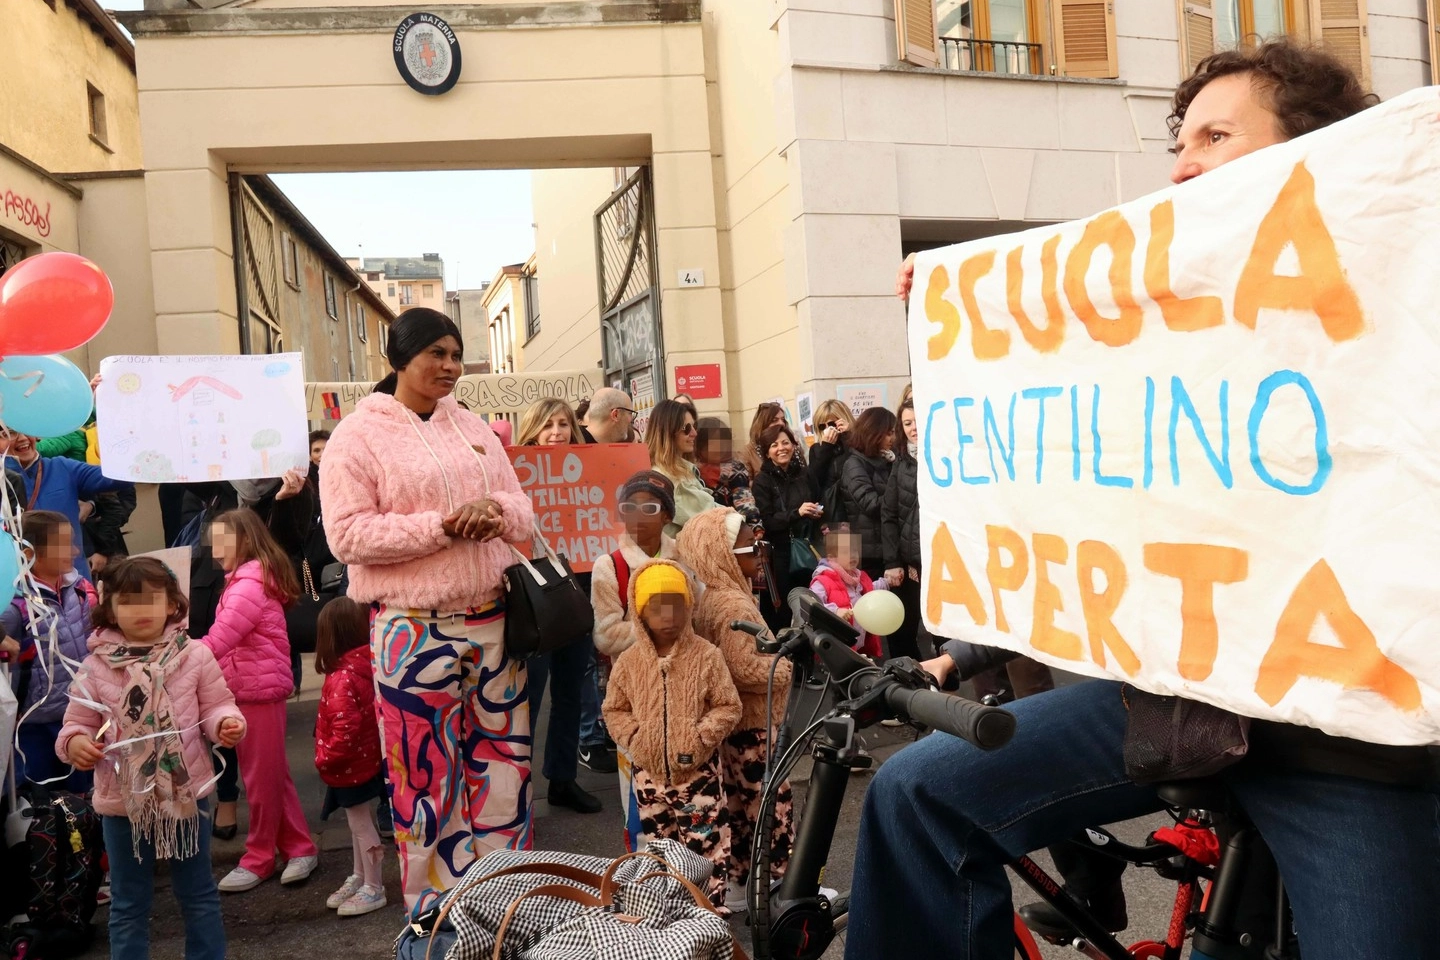 La protesta per salvare l'asilo Gentilino